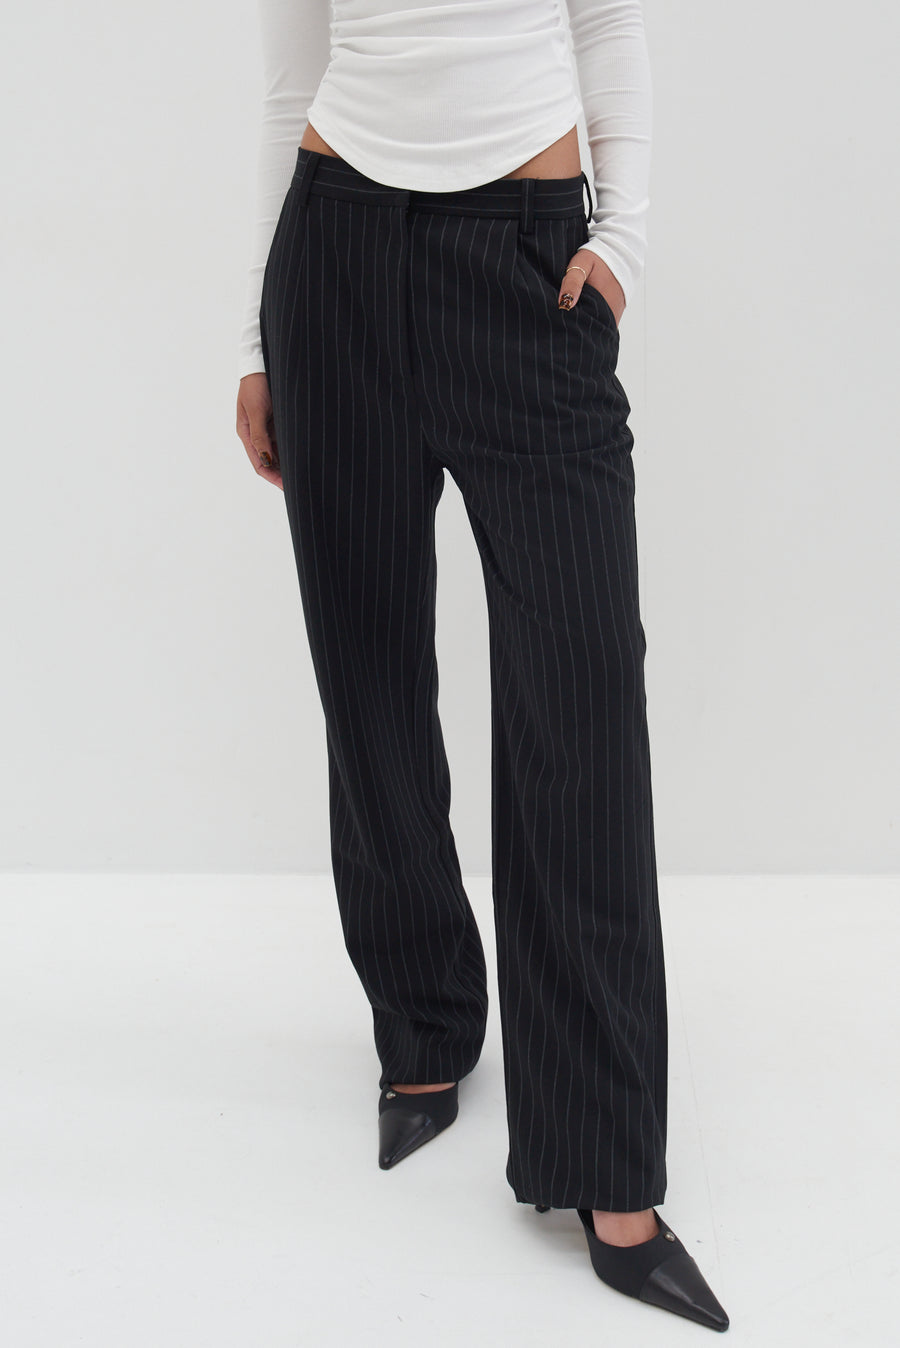 Rylee Trousers - Pinstripe Black